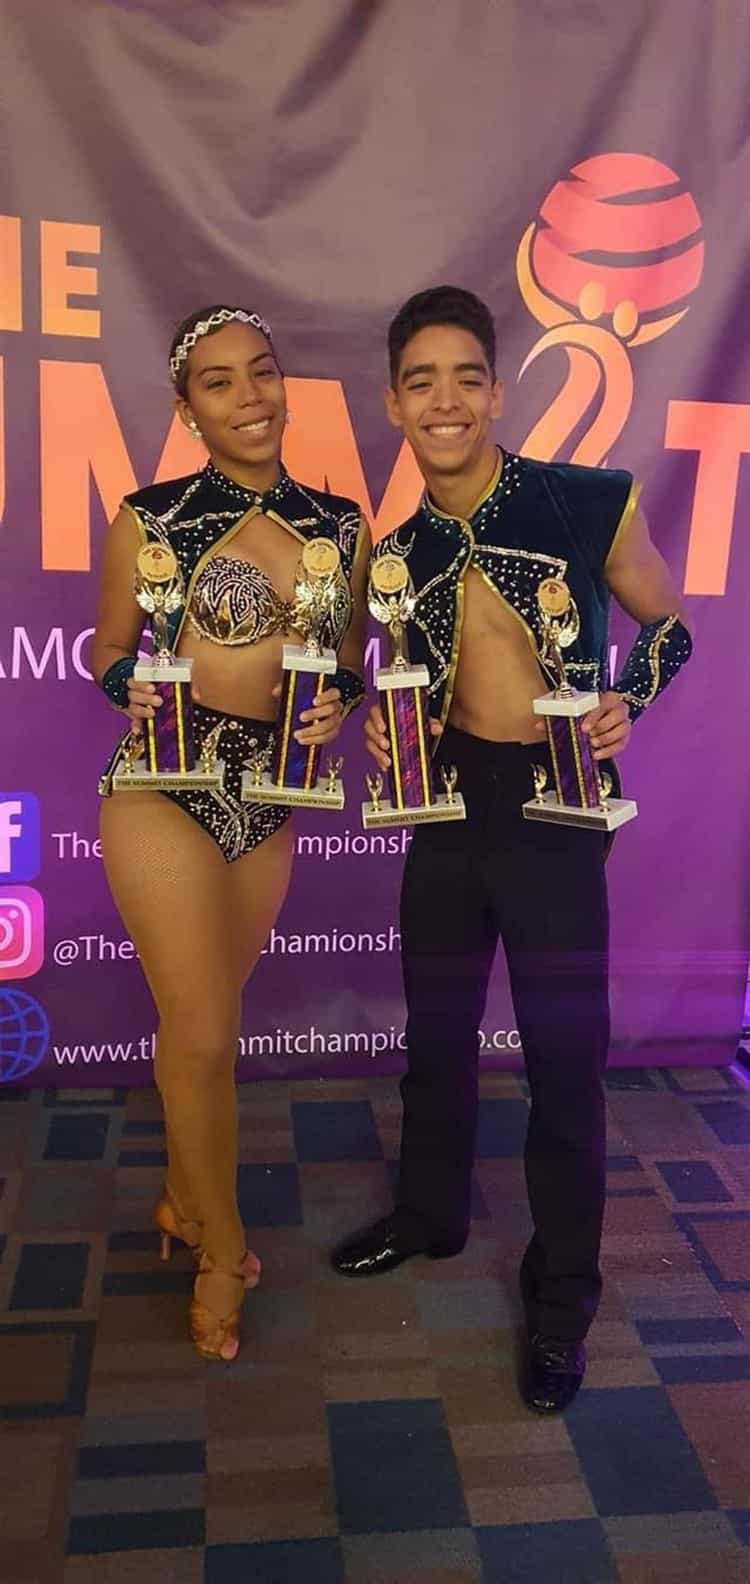 Veracruzanos Kemish Aquino, Pamela Aquino y Valeria León ganan campeonato mundial de salsa